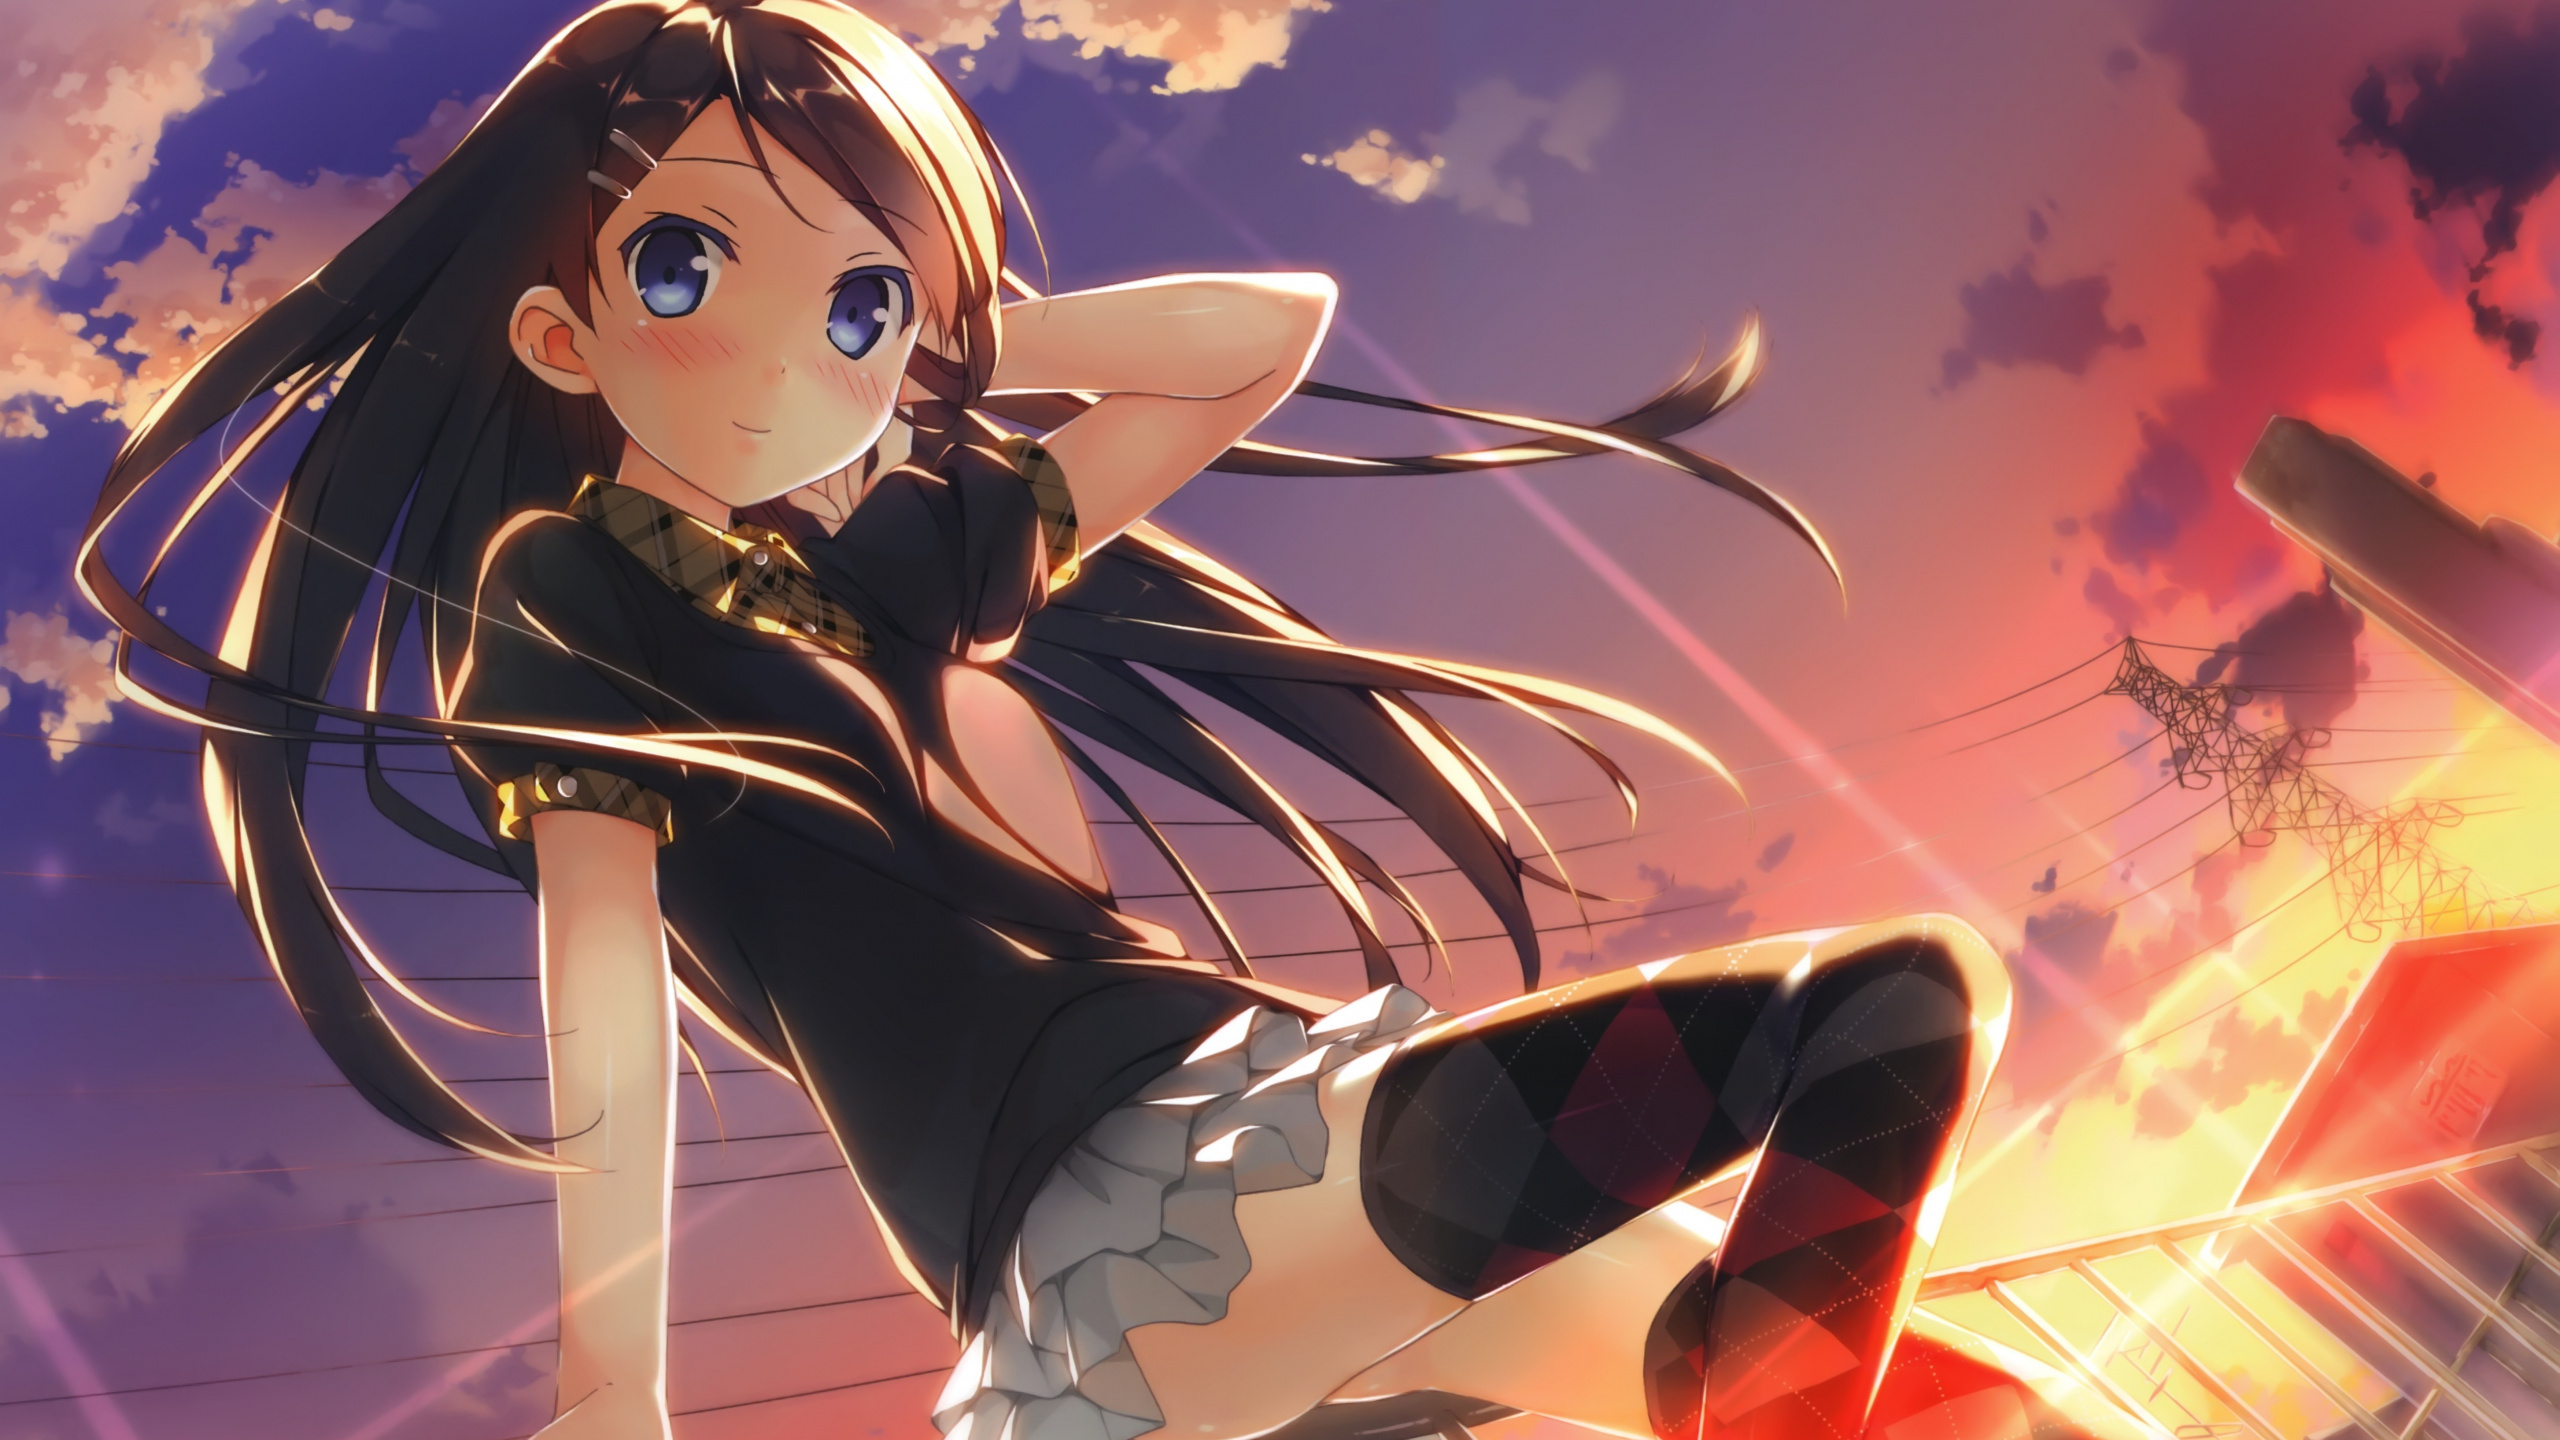 Mädchen in Schwarz-weißer Schuluniform Anime-Charakter. Wallpaper in 2560x1440 Resolution